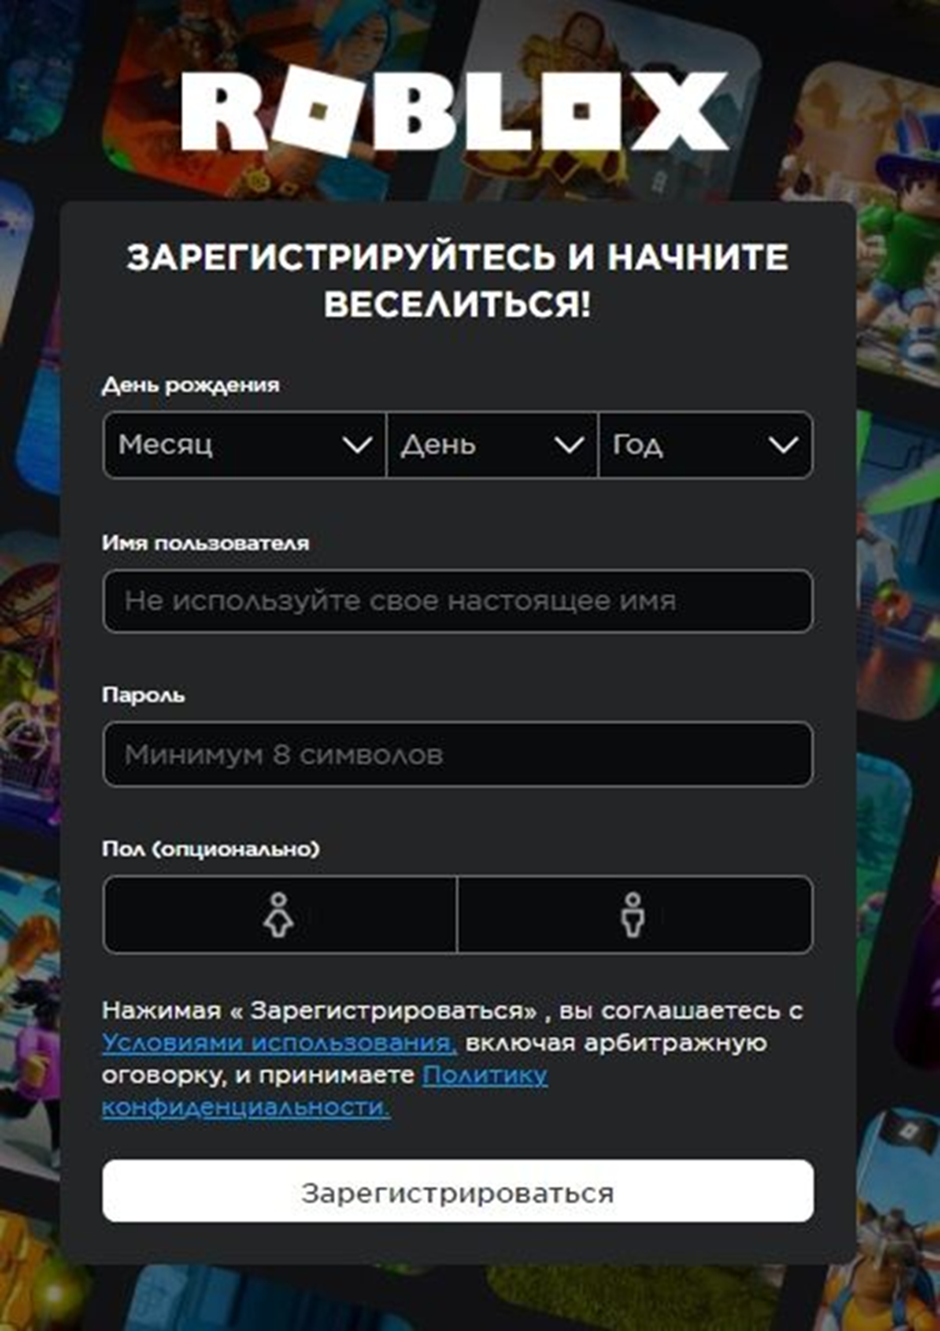 Как зарегистрироваться в roblox. Как зарегистрироваться в РОБЛОКС. Как можно зарегистрироваться в РОБЛОКСЕ. Как зарегистрироваться в РОБЛОКСЕ на телефоне на русском языке. Как зарегистрироваться на приложение Roblox.